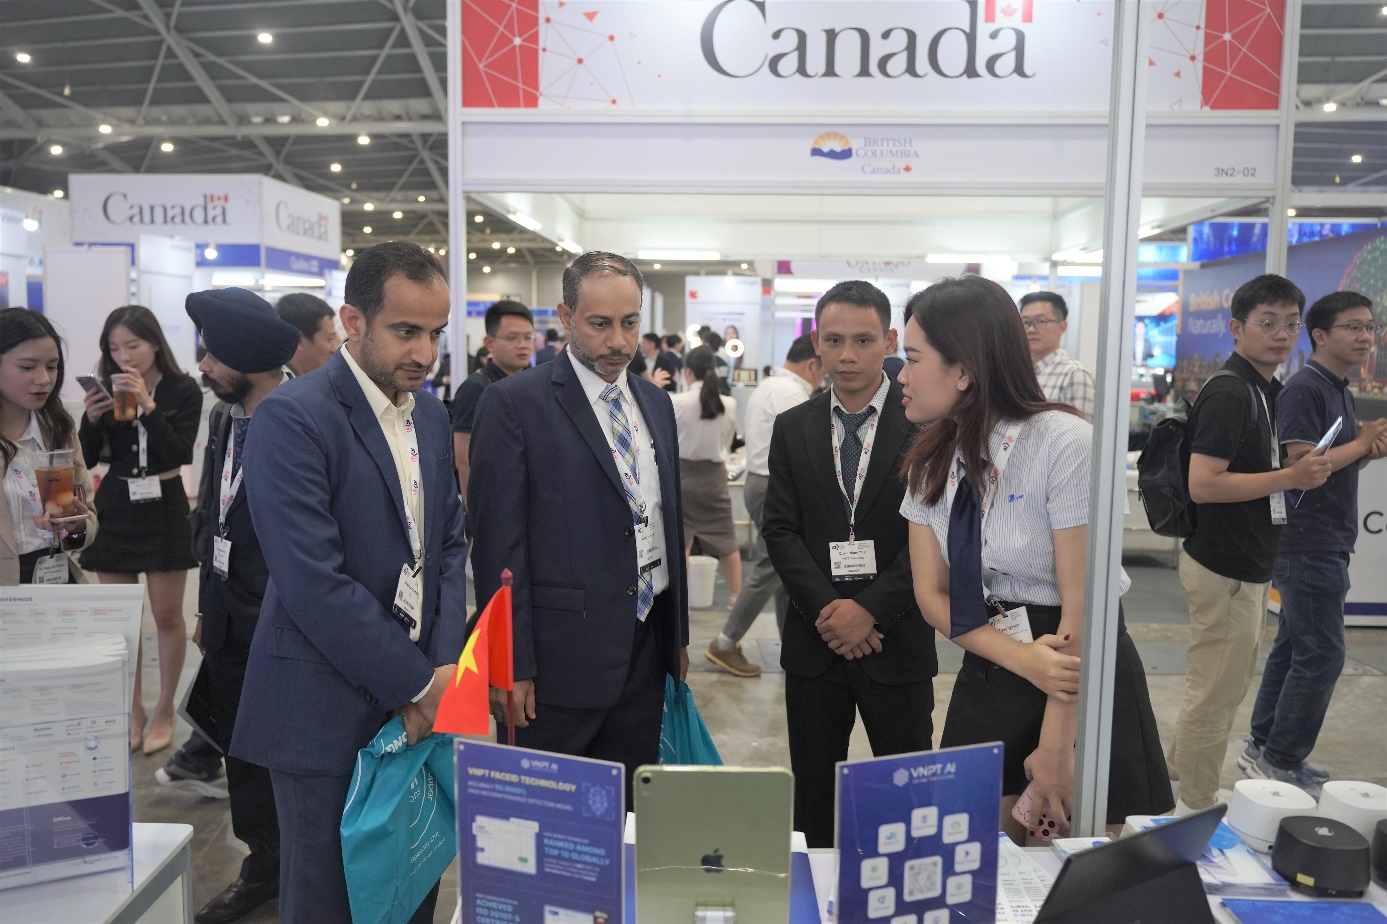 Tại Hội nghị thượng đỉnh Công nghệ châu Á 2023 (Asia Tech X Singapore 2023), nhiều khách tham quan quốc tế bày tỏ sự ngạc nhiên với tốc độ phát triển của công nghệ Việt Nam sau khi trải nghiệm VNPT FaceID - công nghệ sinh trắc học khuôn mặt được ứng dụng trong Hệ sinh thái VNPT AI.